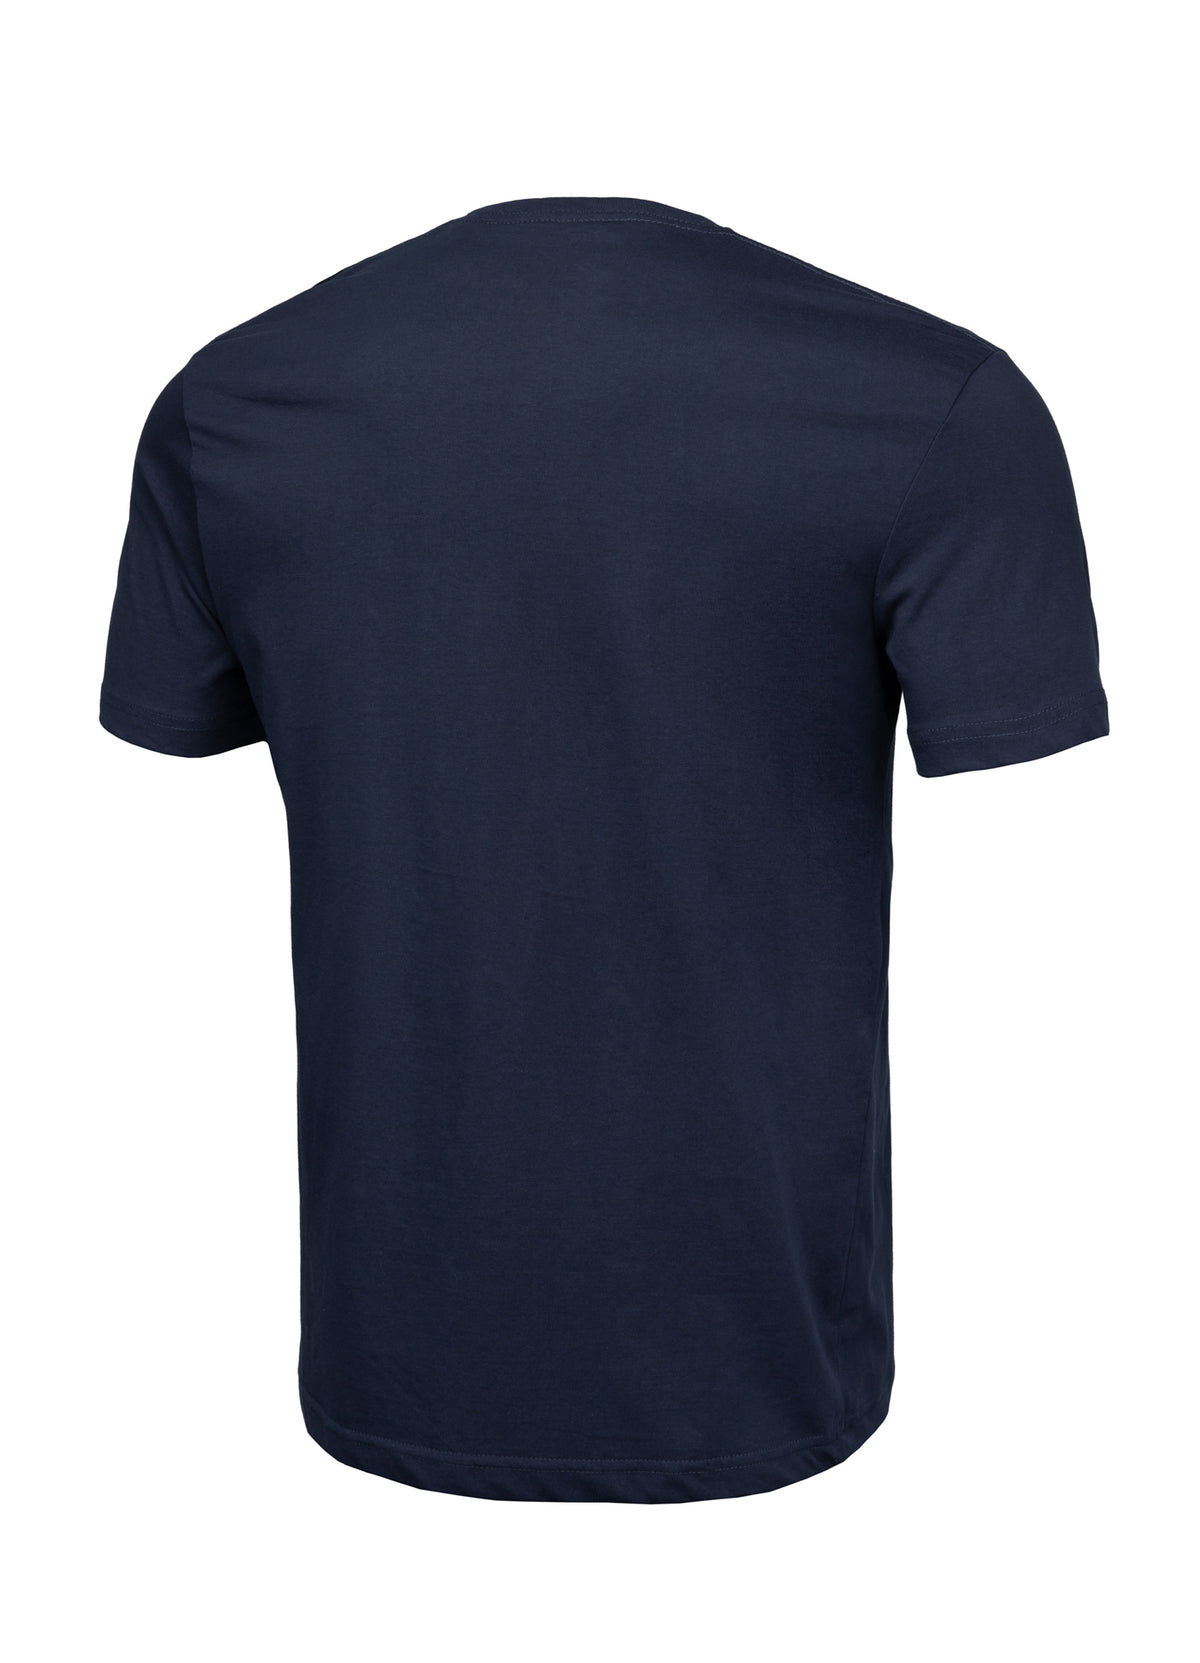 PITBULL USA Lightweight Dark Navy T-shirt - Pitbullstore.eu